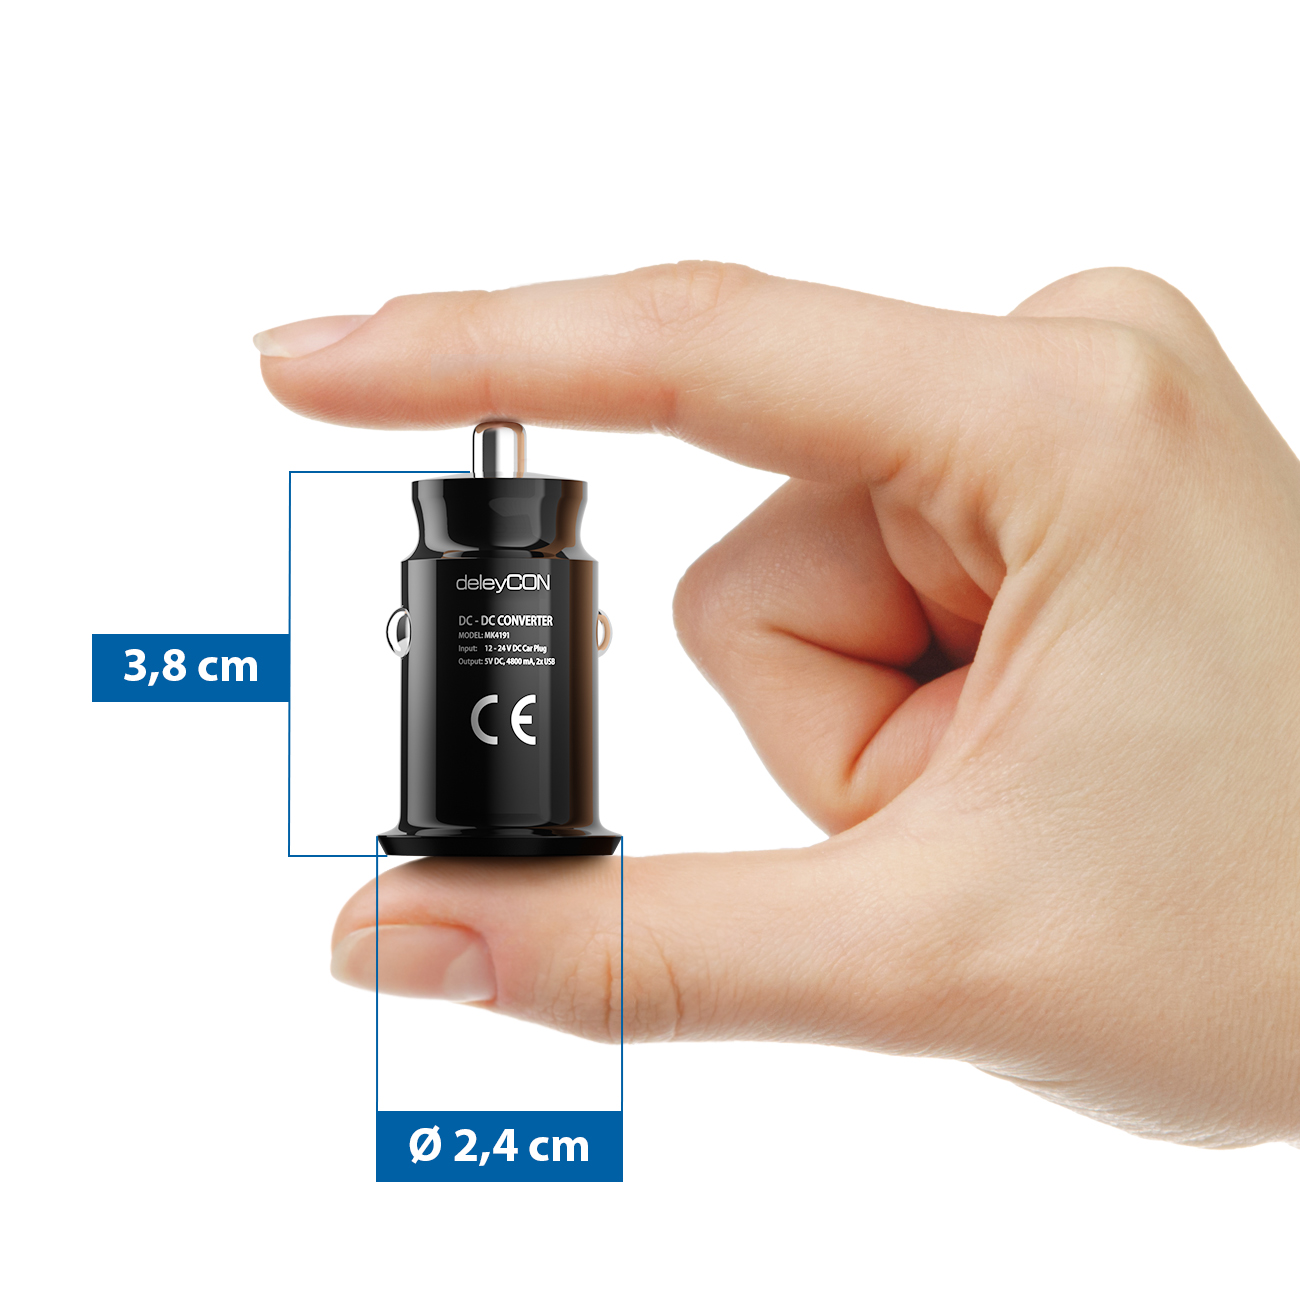 WeFix Doppel USB-A 4,8A Autoladegerät für Zigarettenanzünder mit  LUSB-C-Kabel 1 m - Telefonzubehör fürs Auto - Einkauf & Preis